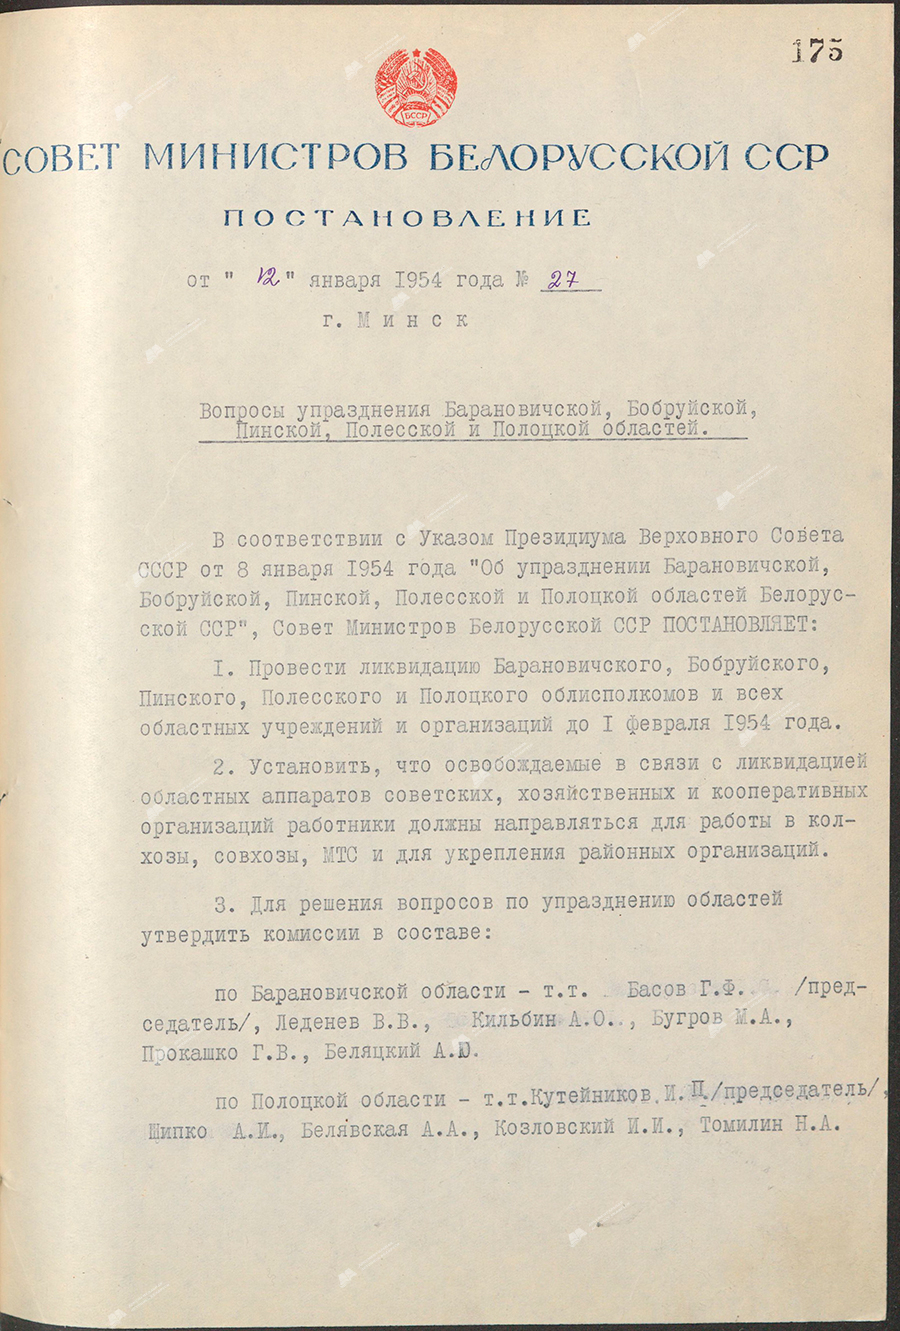 Beschluss Nr. 27 des Ministerrats der Weißrussischen SSR «Fragen der Abschaffung der Gebiete Baranowitschi, Bobruisk, Pinsk, Polesie und Polozk»-с. 0